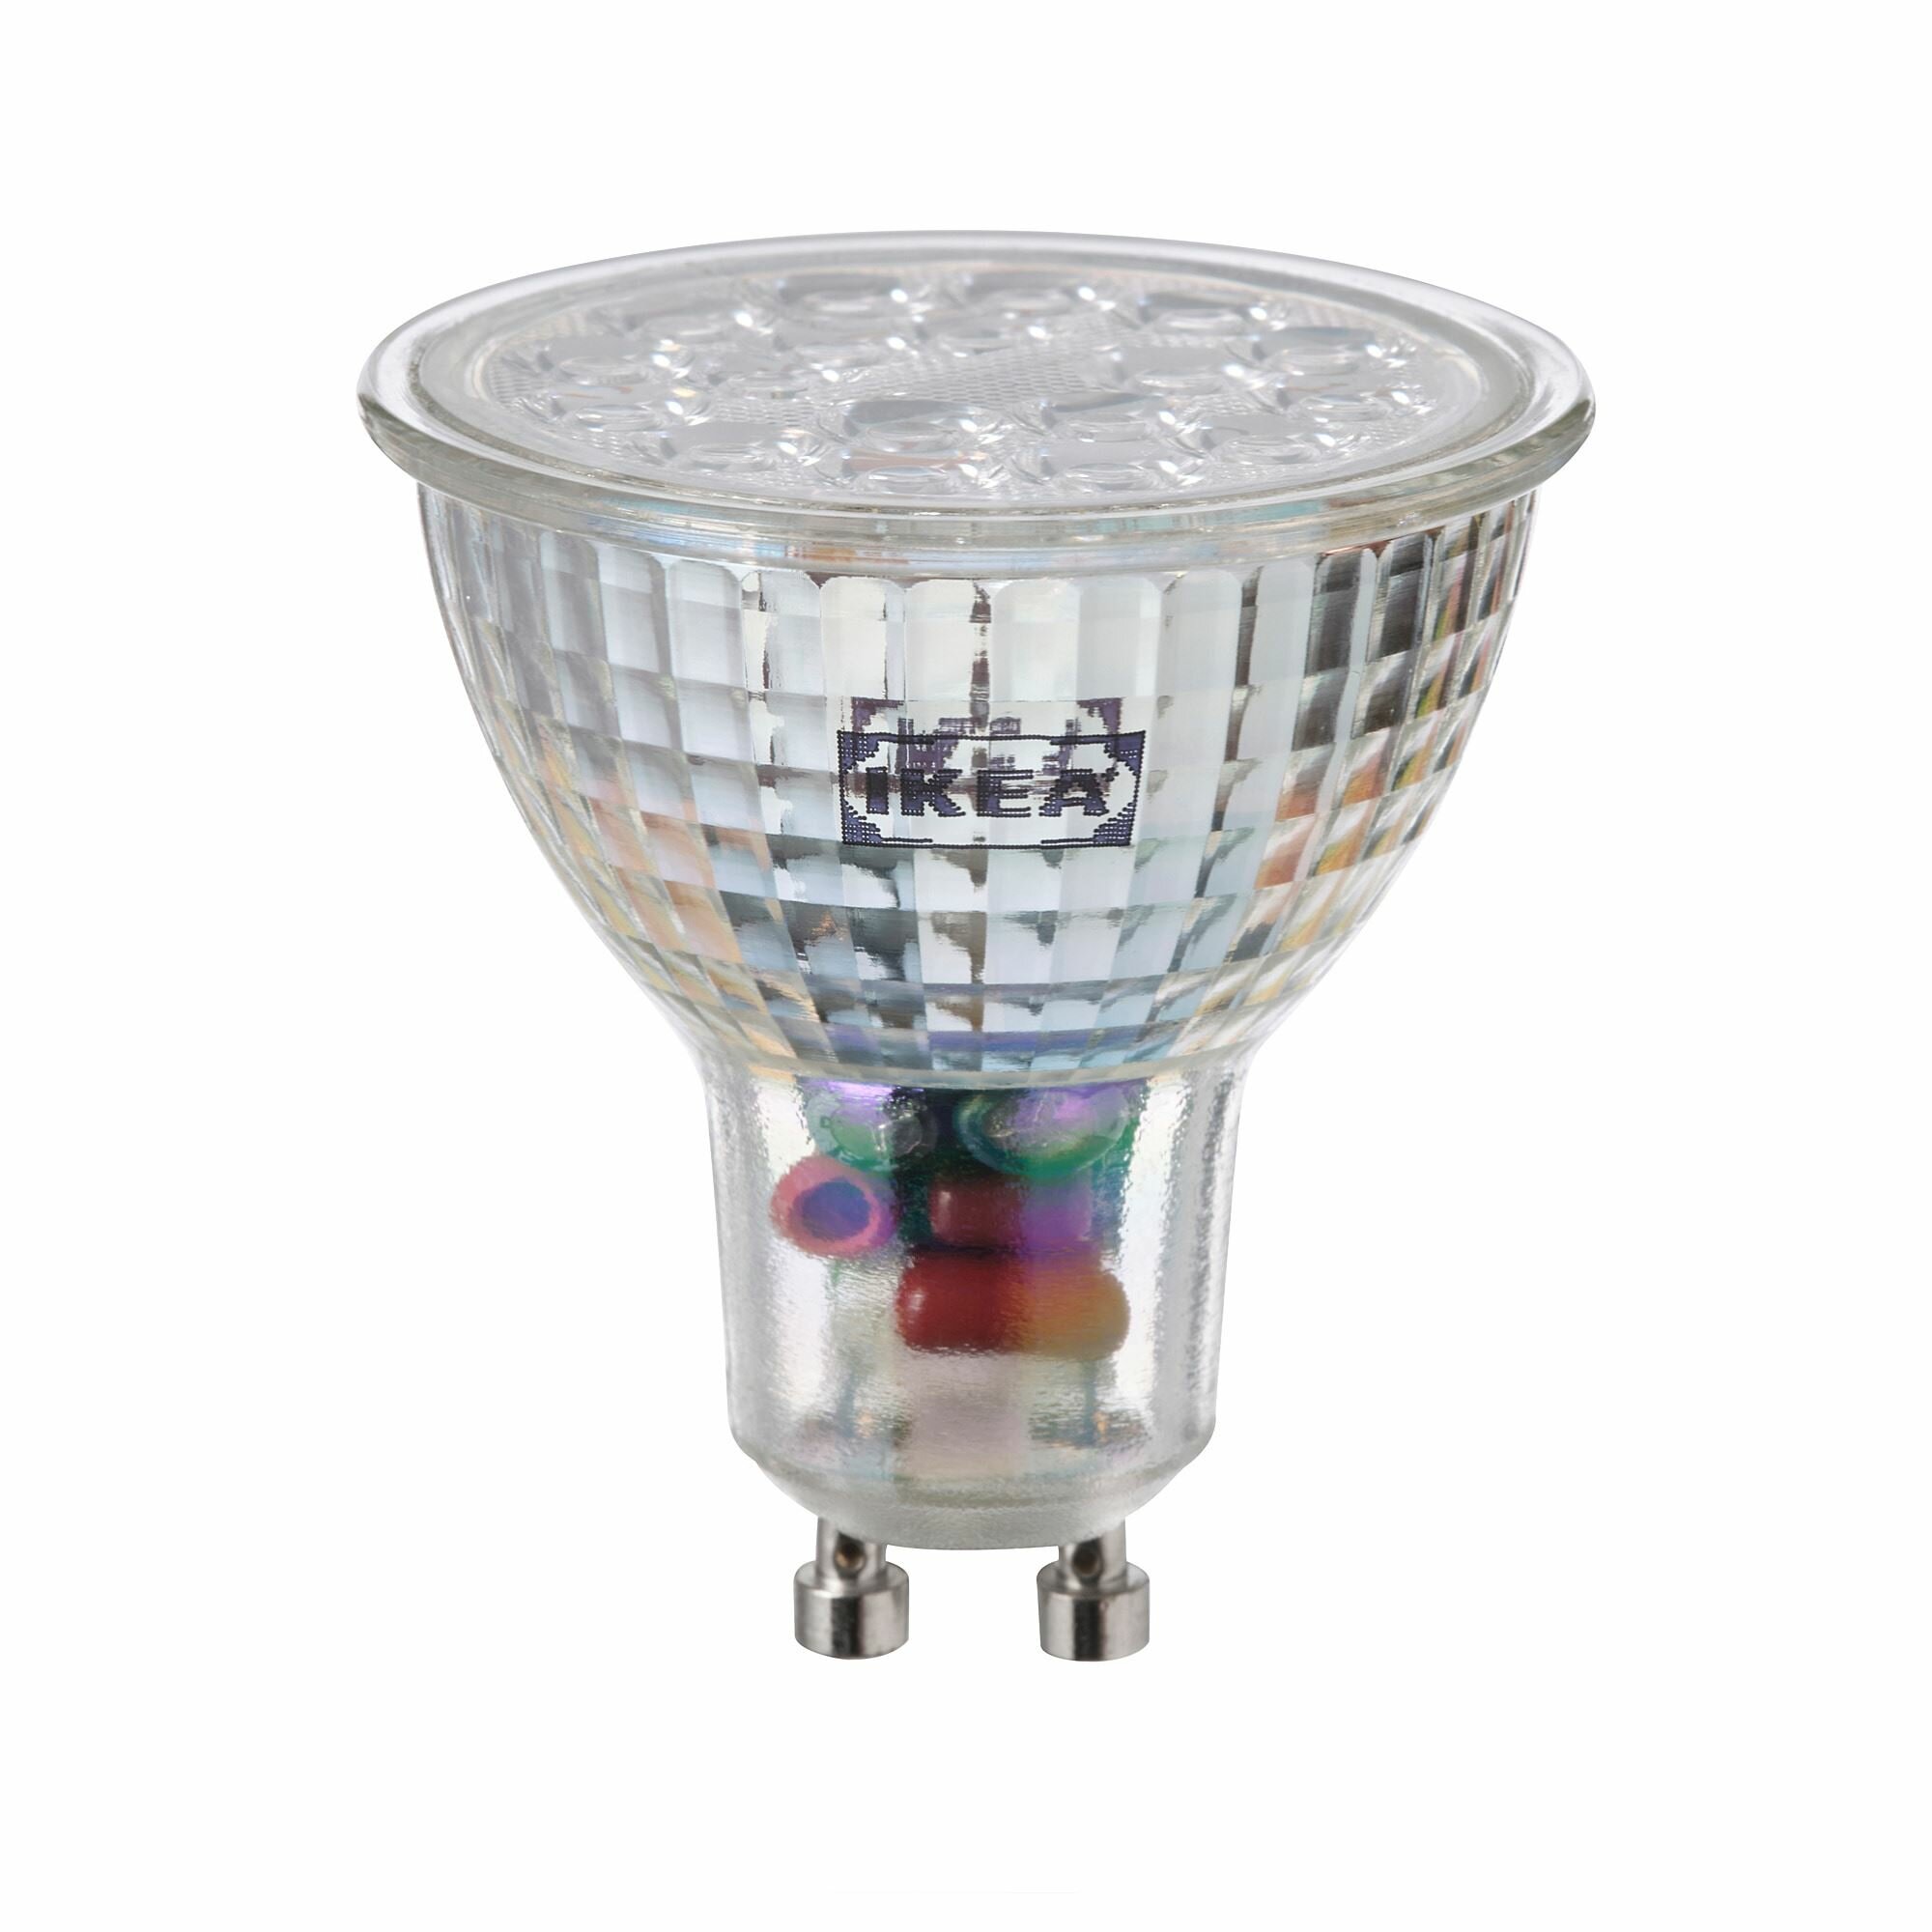 Икея / IKEA TRADFRI, TRADFRI, Светодиодная лампа GU10, белый спектр, 345 лм, интеллектуальный беспроводной диммер